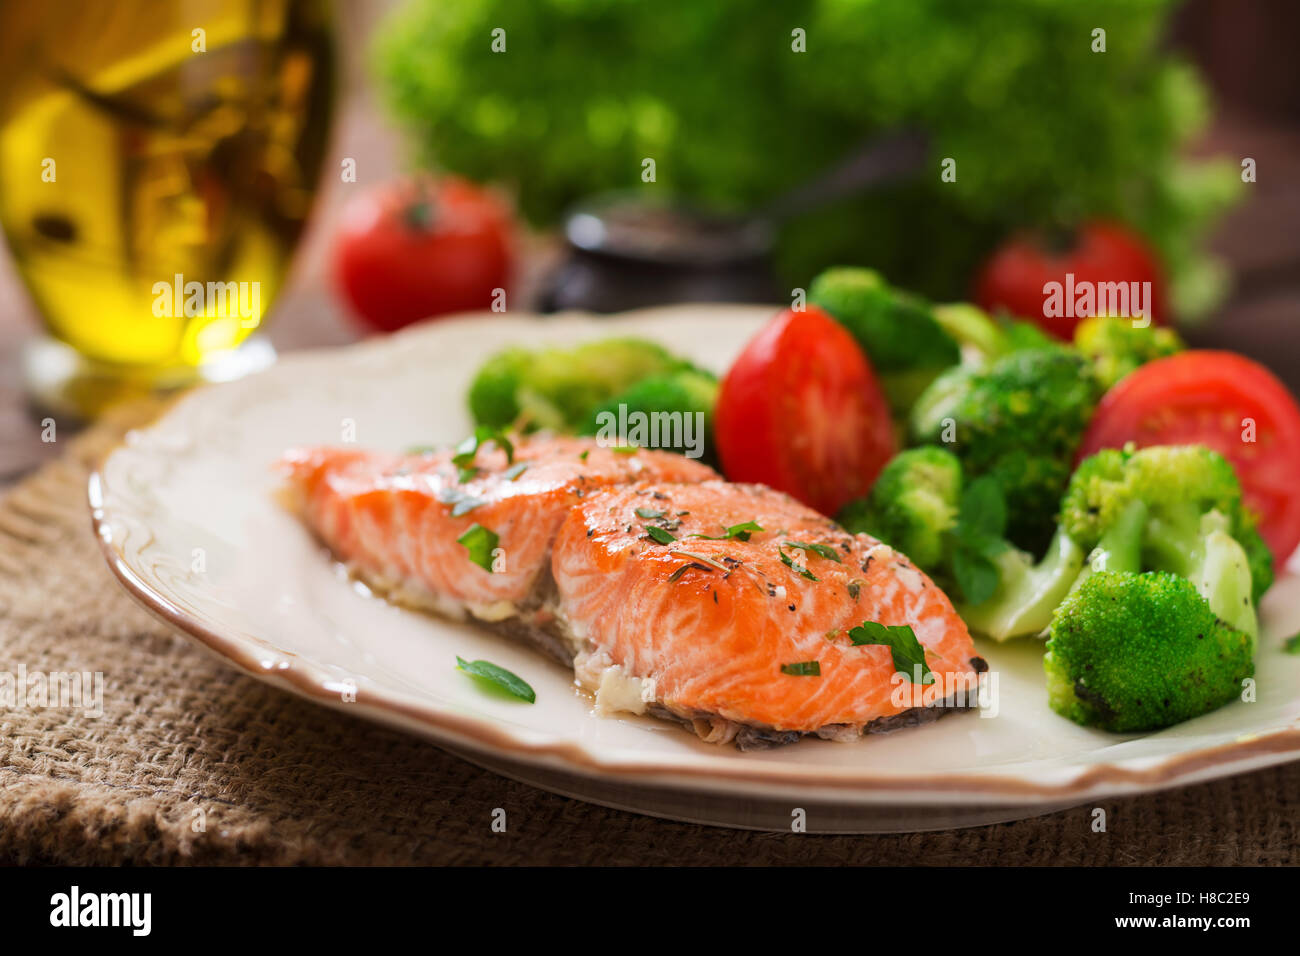 Gebackener Fisch Lachs garniert mit Brokkoli und Tomaten. Diät-Menü. Fisch-Menü. Meeresfrüchte - Lachs. Stockfoto